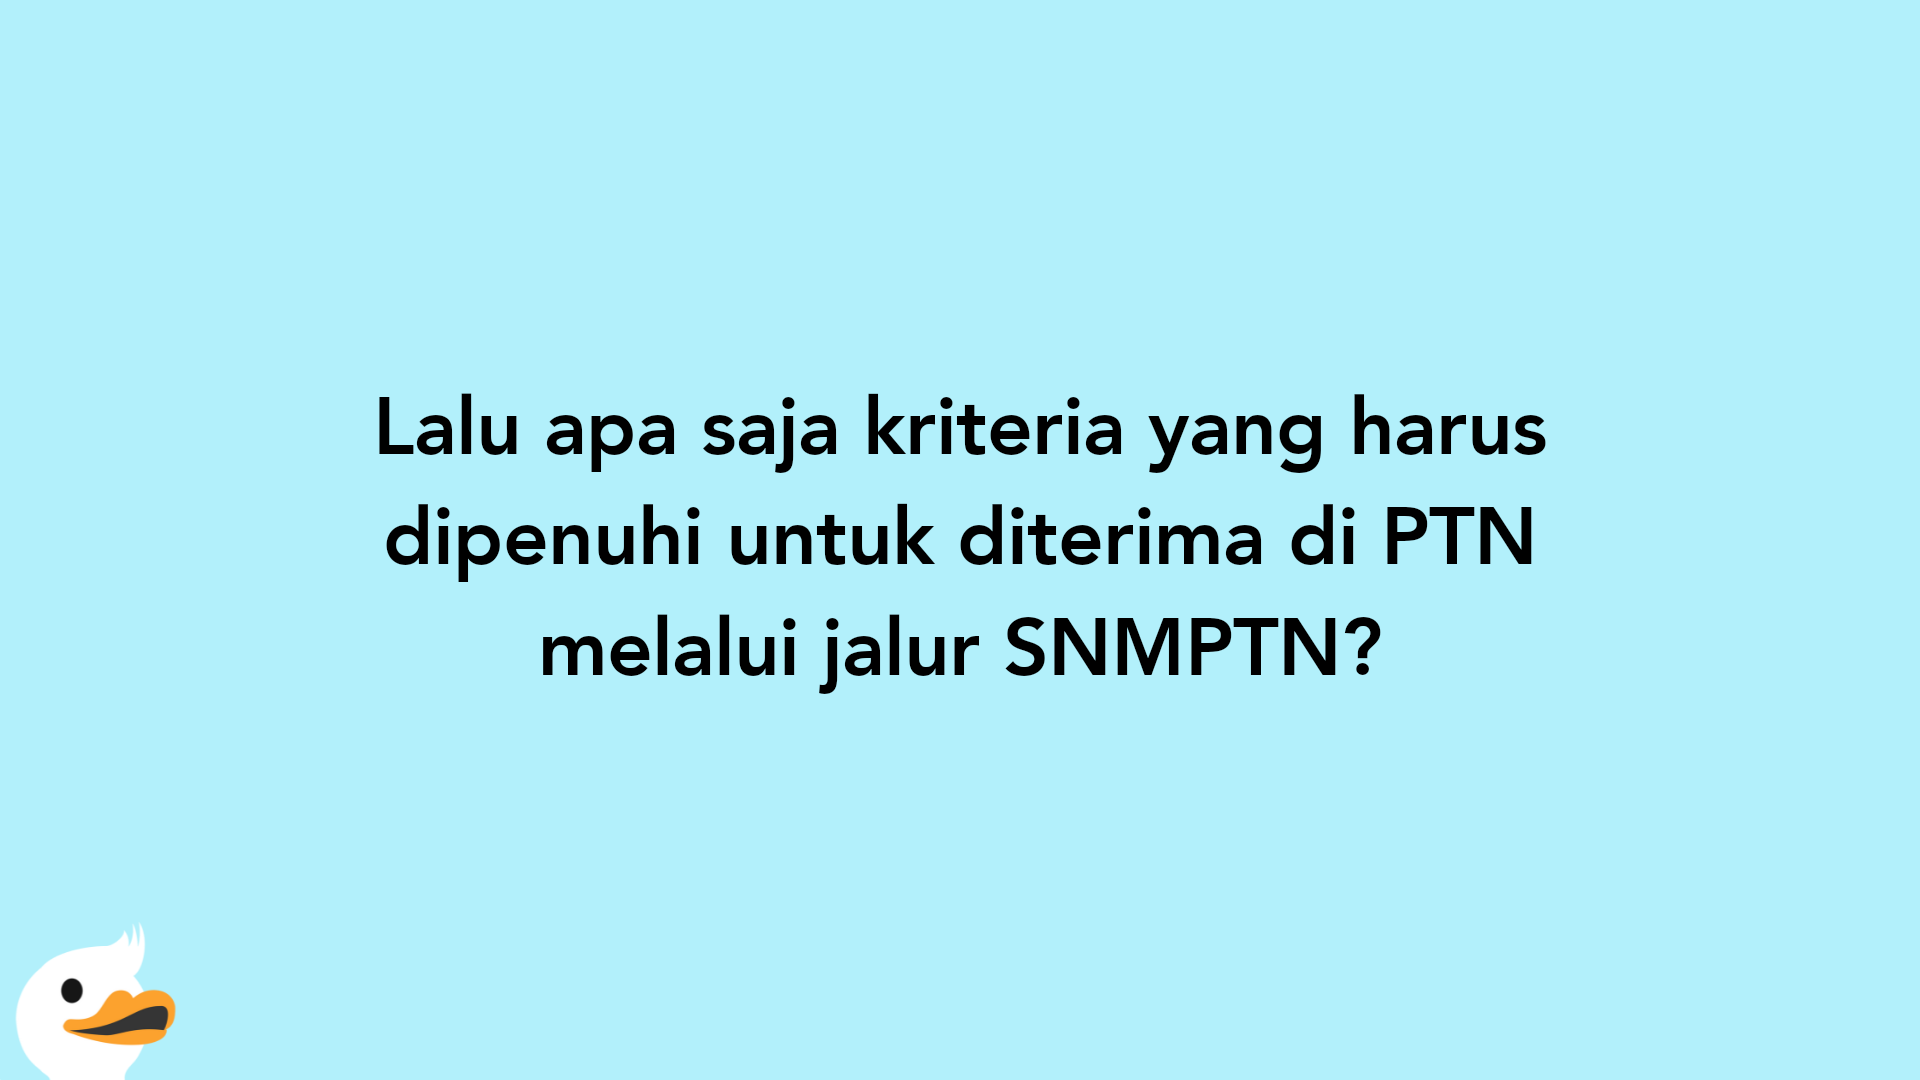 Lalu apa saja kriteria yang harus dipenuhi untuk diterima di PTN melalui jalur SNMPTN?